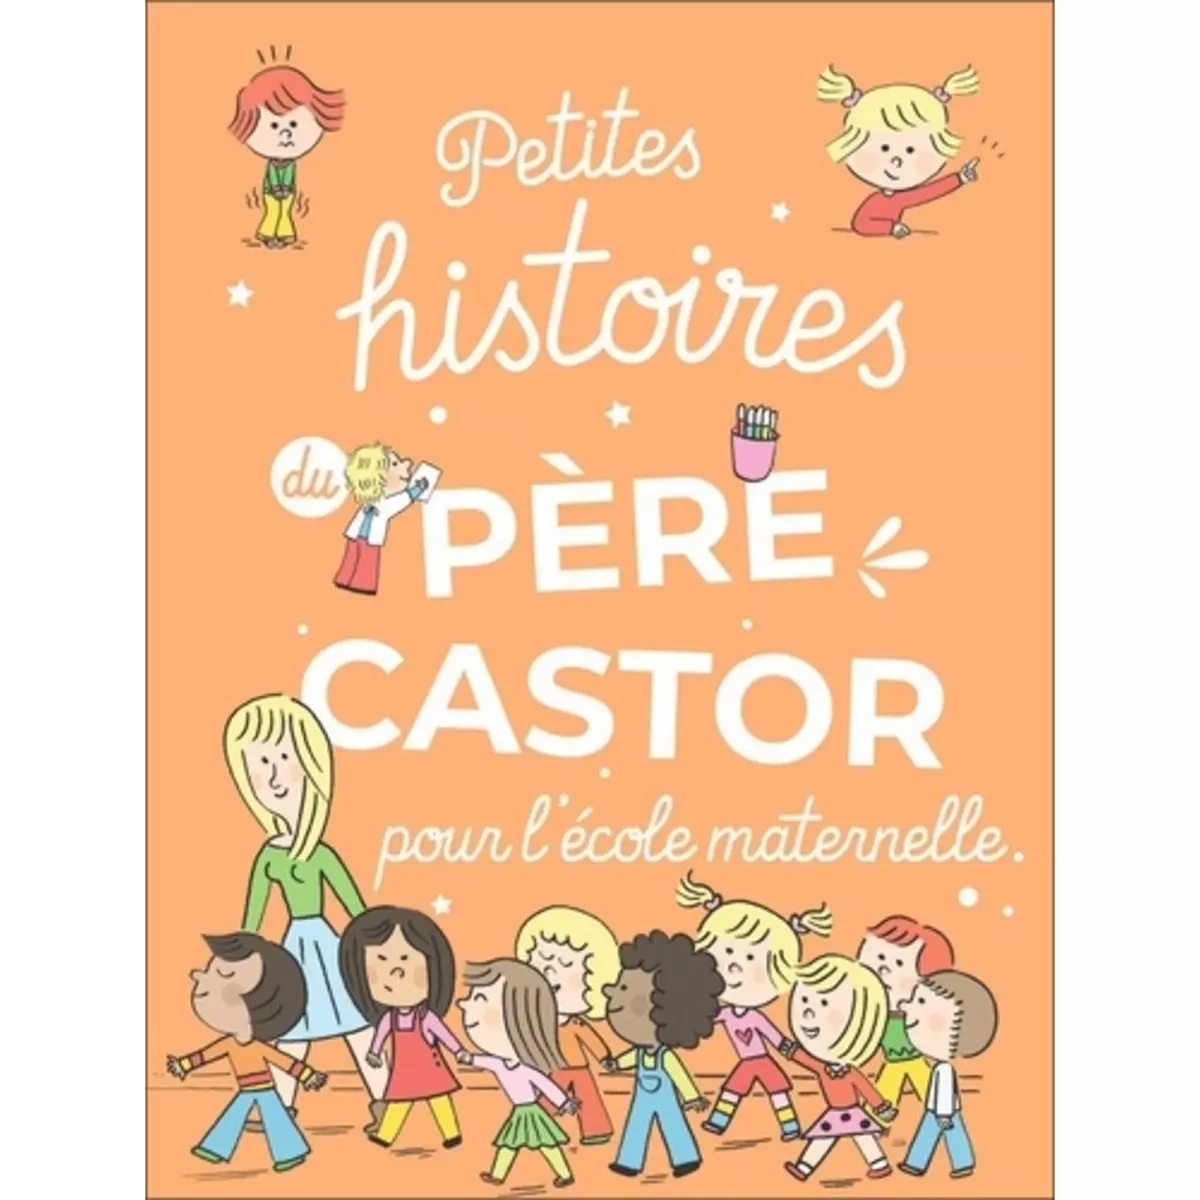  PETITES HISTOIRES DU PERE CASTOR POUR L'ECOLE MATERNELLE, Du Faÿ Laure